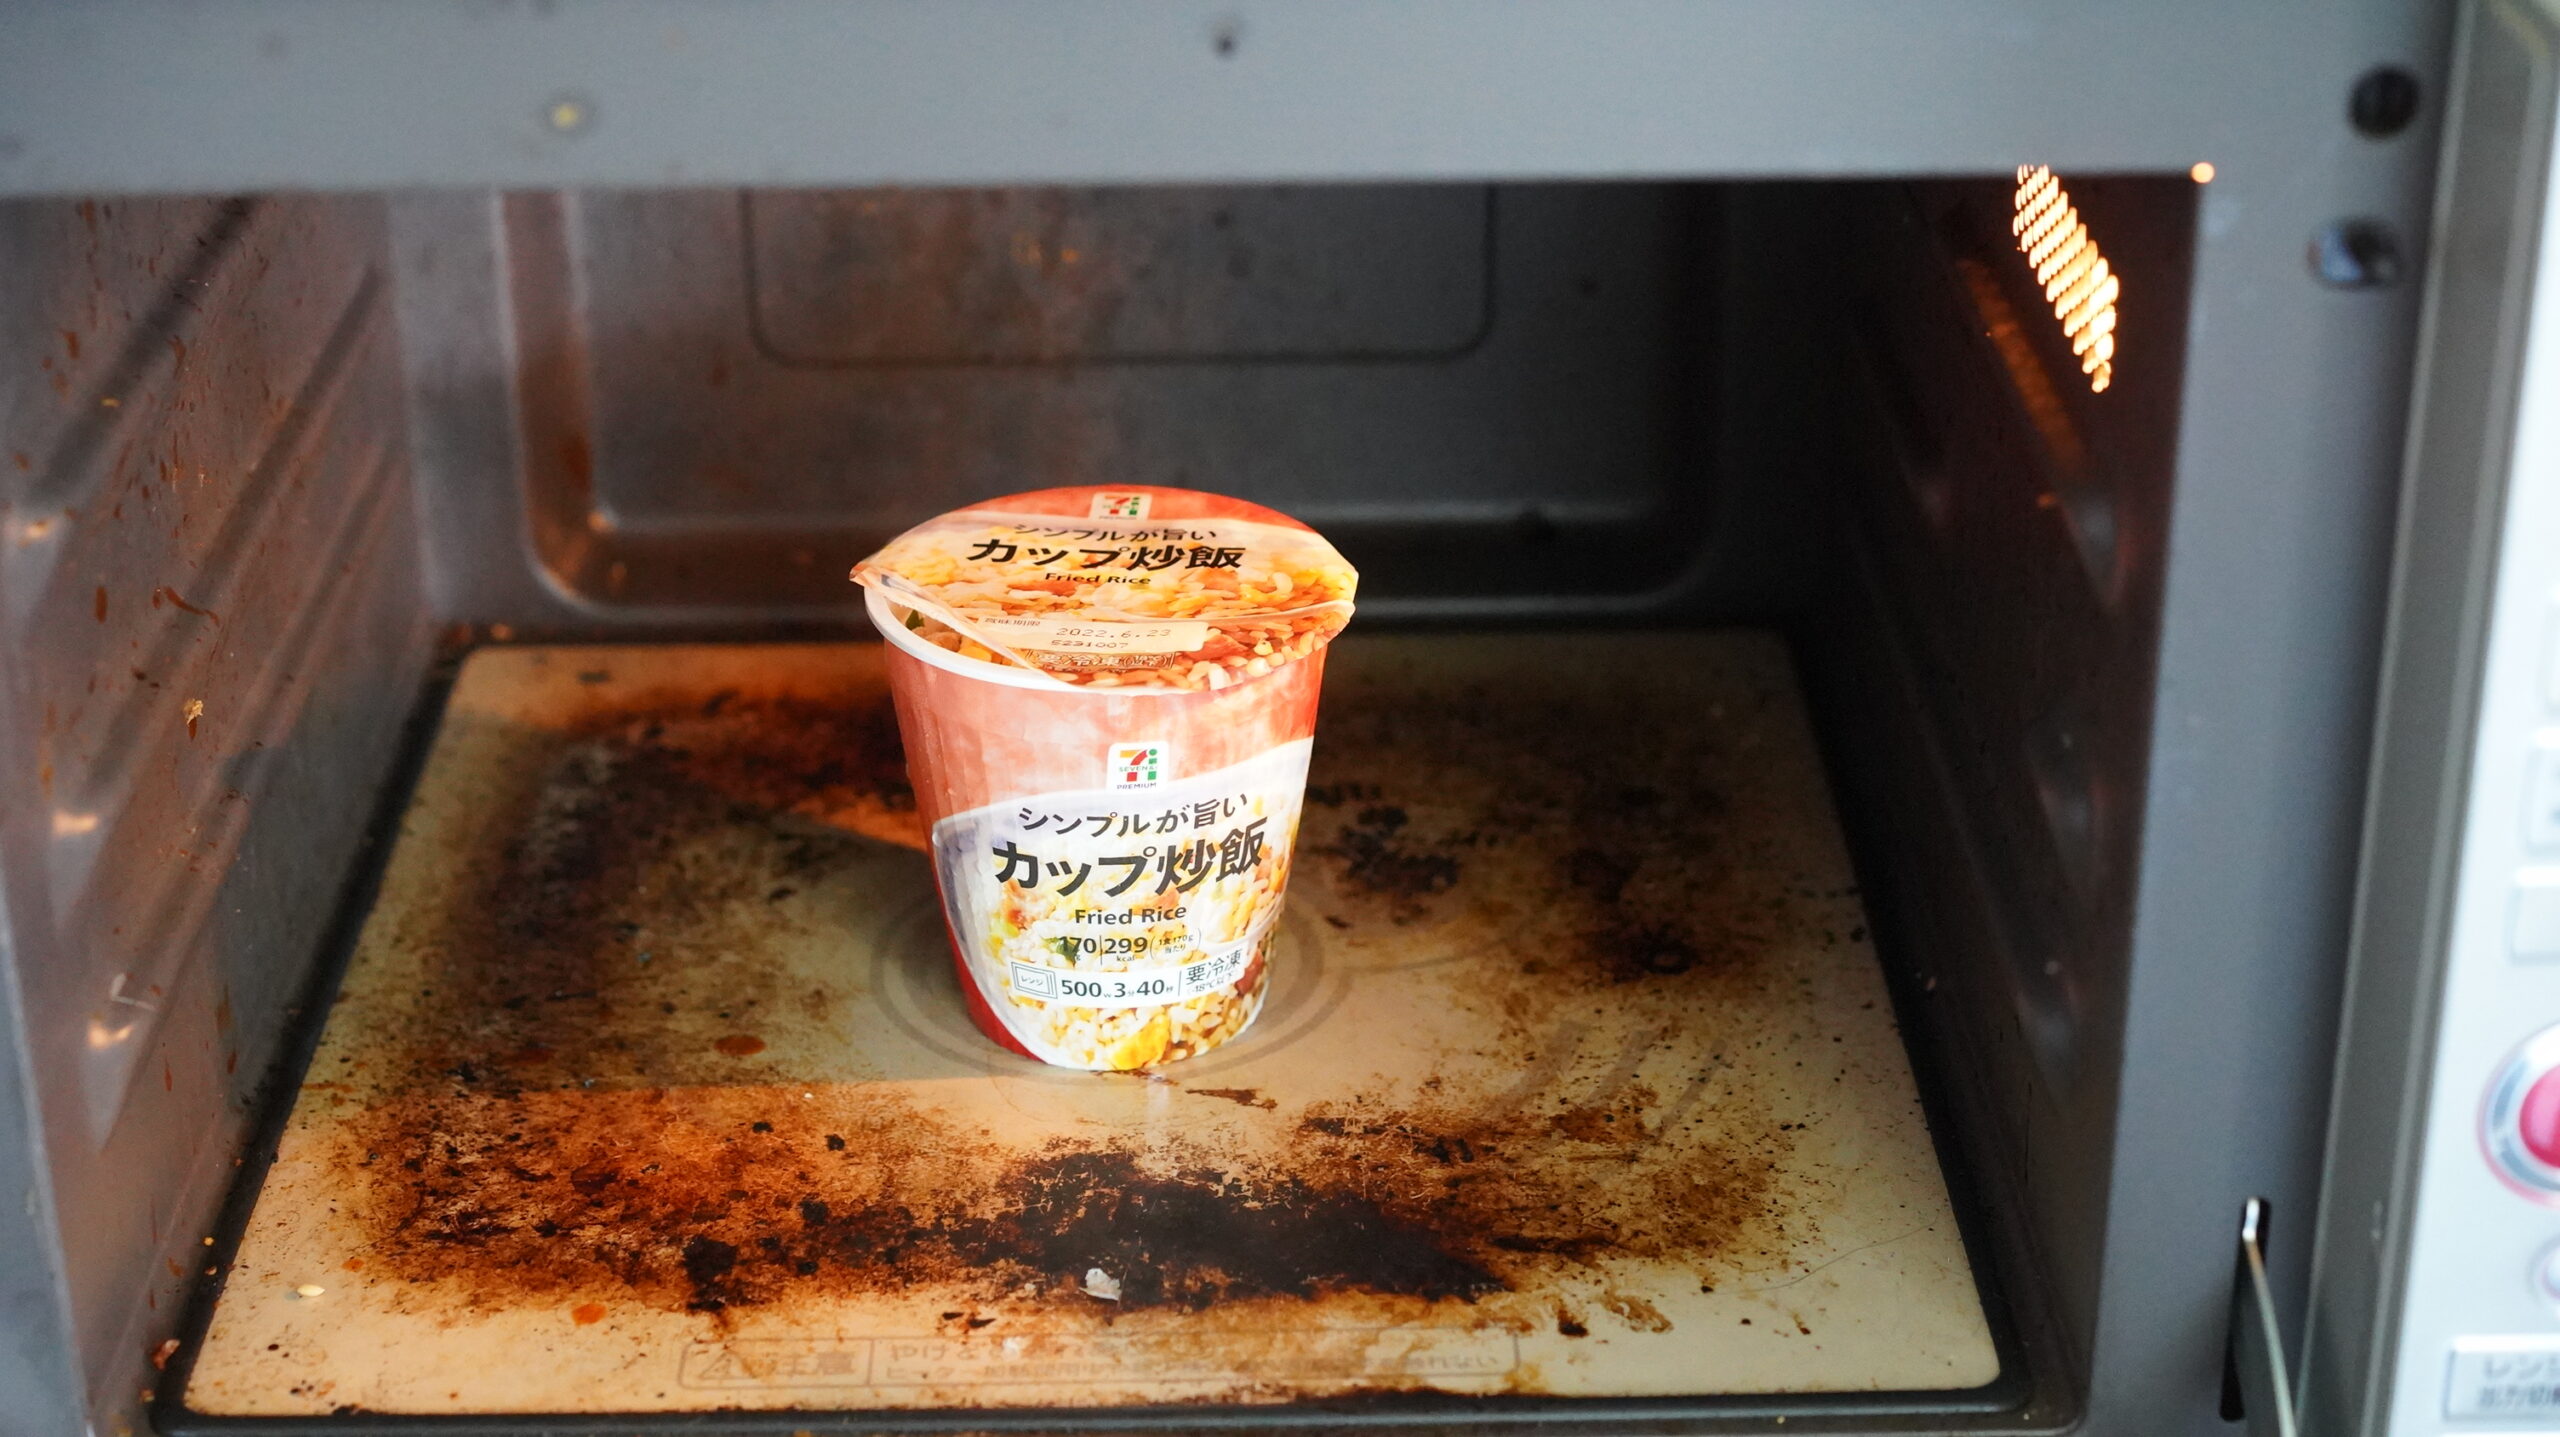 セブンイレブンのカップ型冷凍食品「シンプルで美味しい炒飯」を電子レンジで加熱している写真